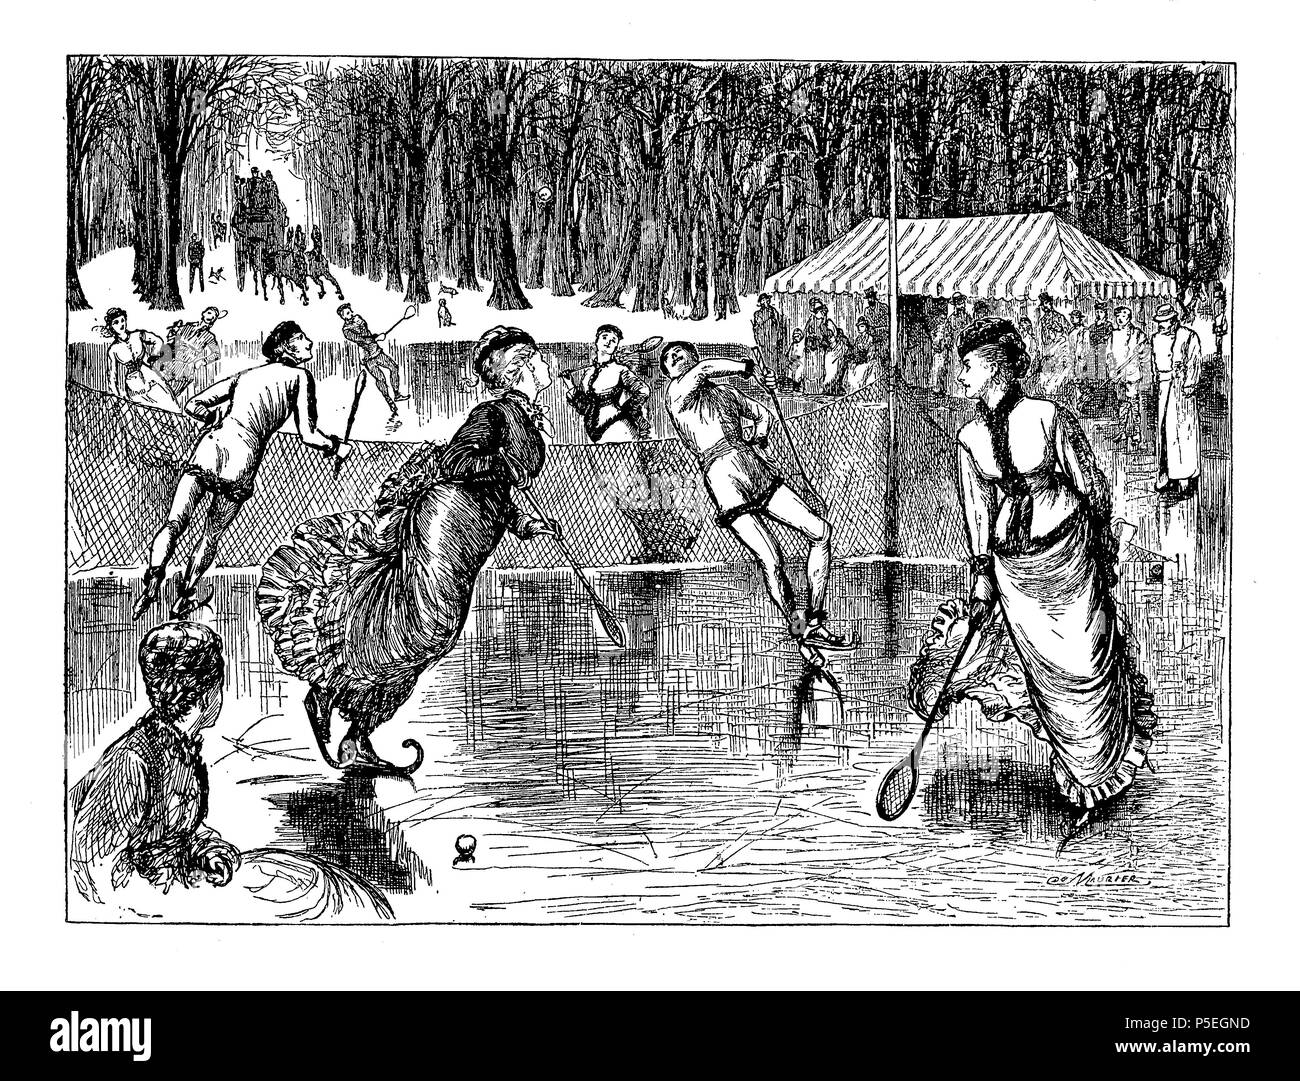 Tennis sur patinoire, caricature montrant un jeu de tennis sur glace par George du Maurier (1834-1896), un caricaturiste franco-britannique pour Punch, 1876 Banque D'Images